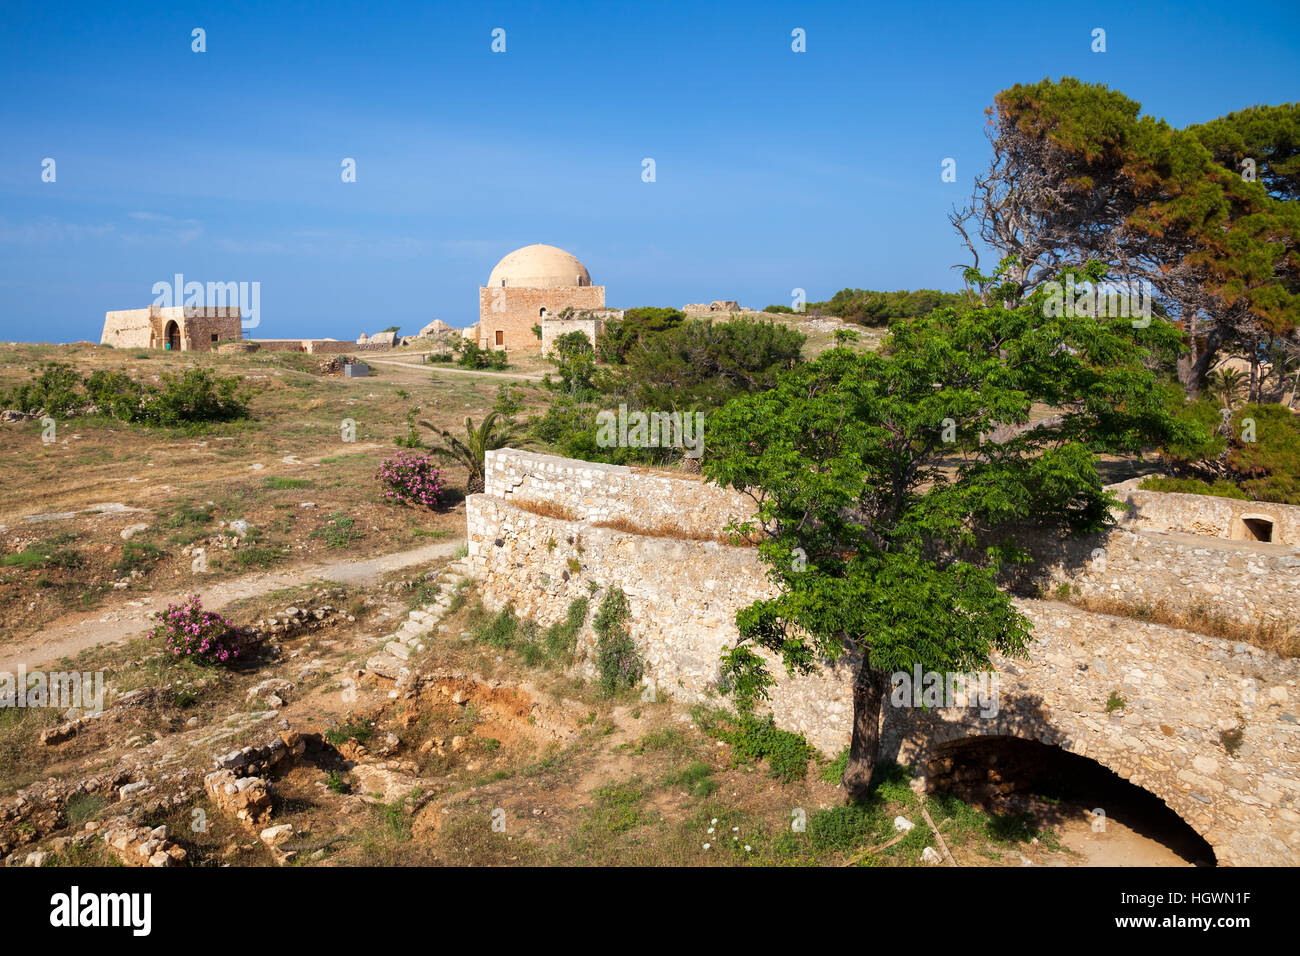 Vue de la citadelle Fortezza, Rethymno, Crète, Grèce, avec mosquée du Sultan Ibrahim en arrière-plan Banque D'Images